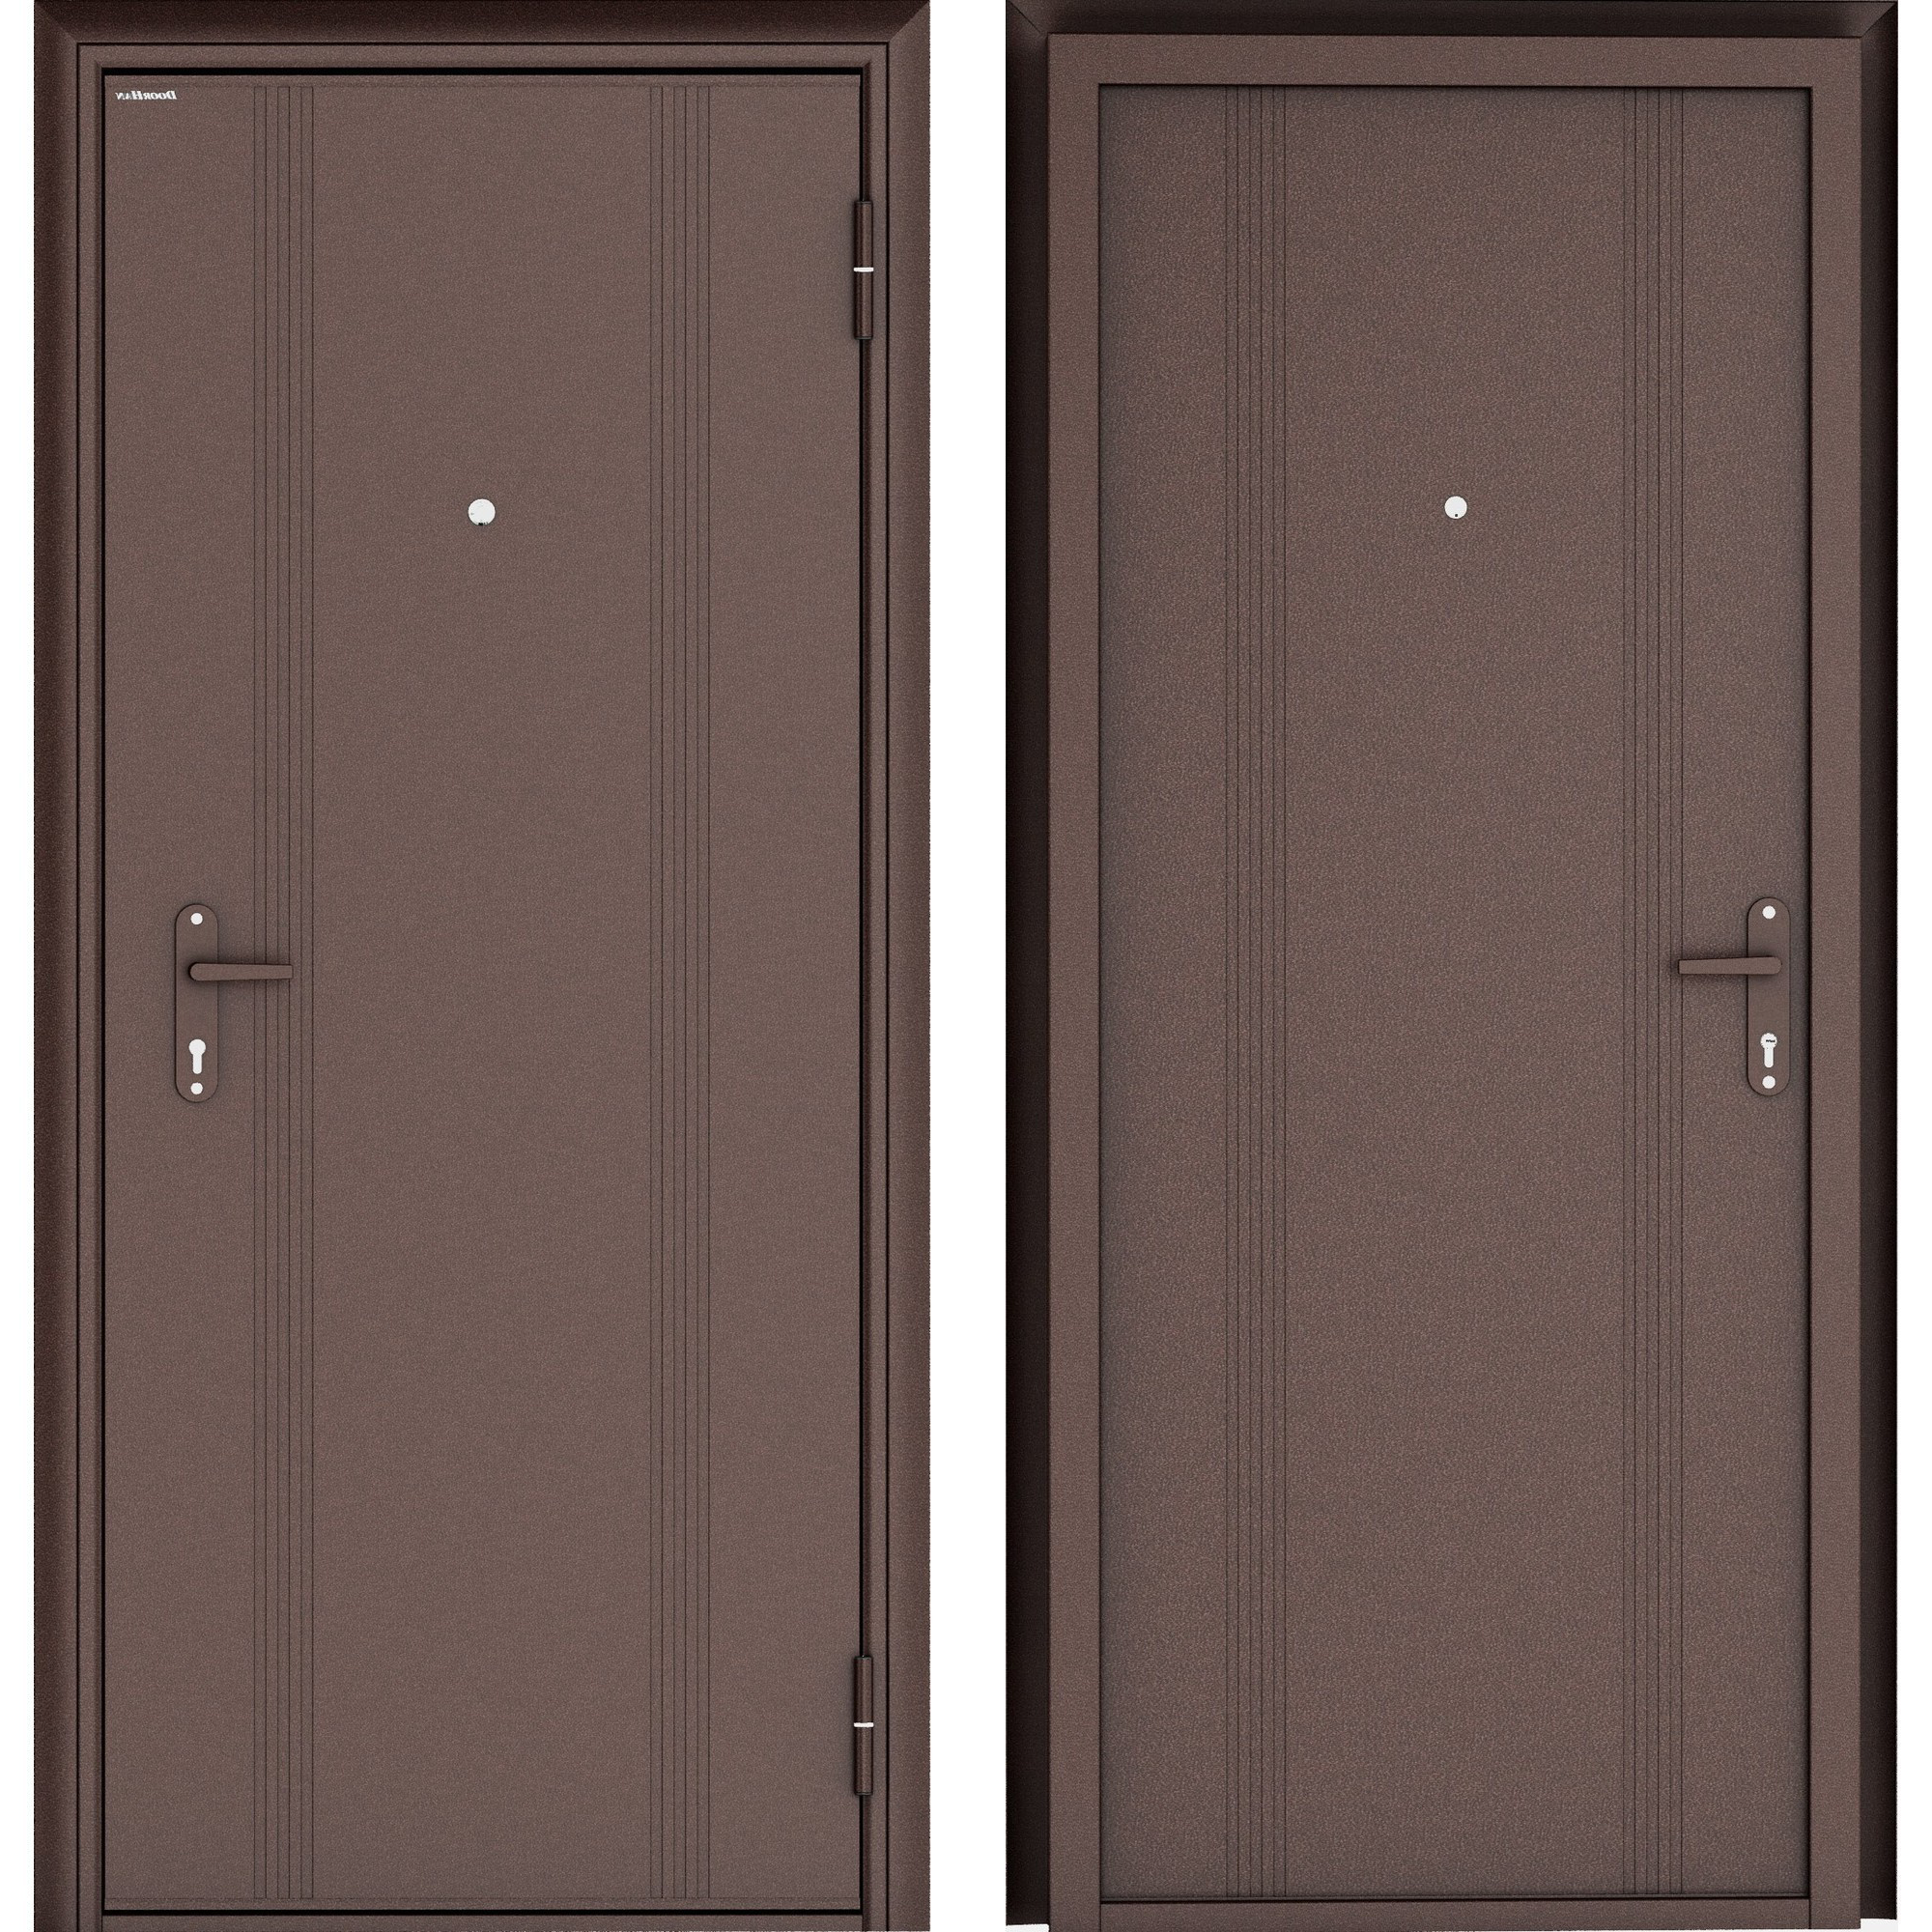 Дверь металлическая входная волгограде купить. Дверь входная металлическая DOORHAN эко 880 мм левая. Дверь входная металлическая DOORHAN эко 880 мм правая. DOORHAN Eco дверь. Дверь входная металлическая Door.